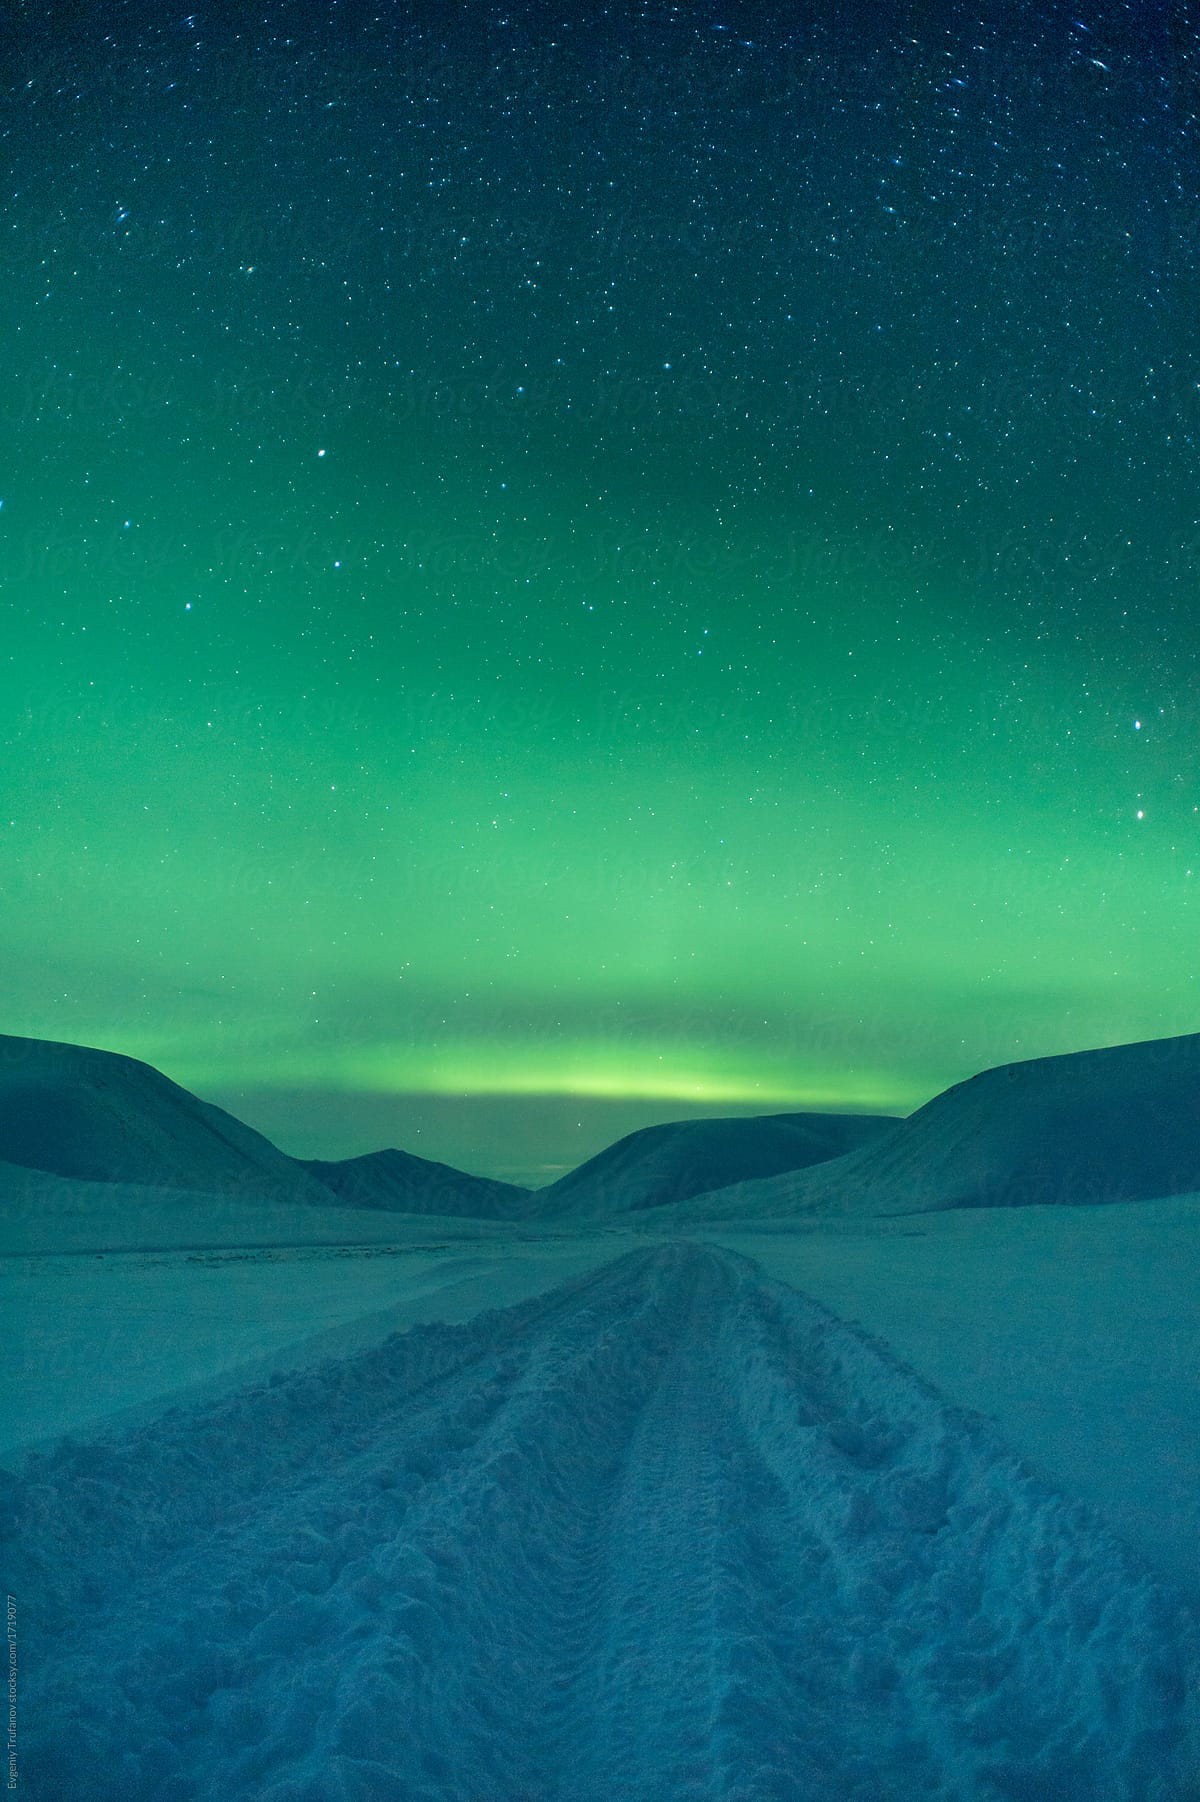 Winter road to Aurora Borealis